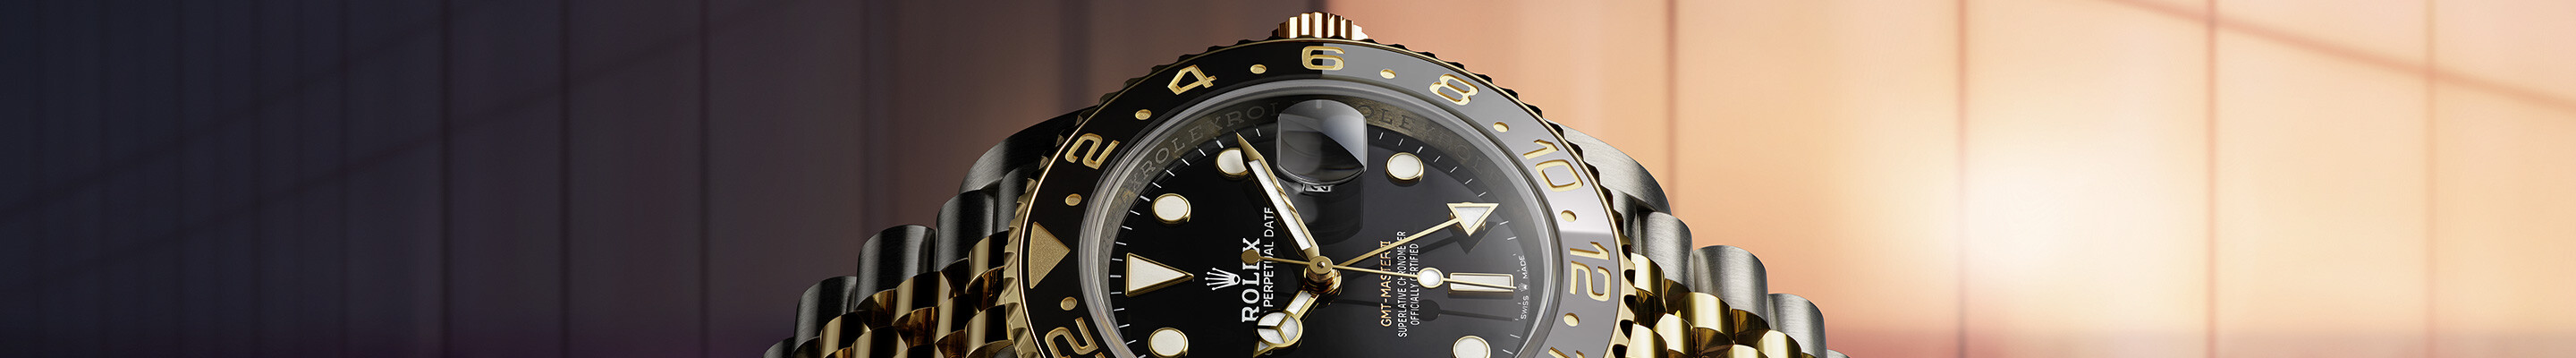 Rolex GMT-Master II chez Jacquot